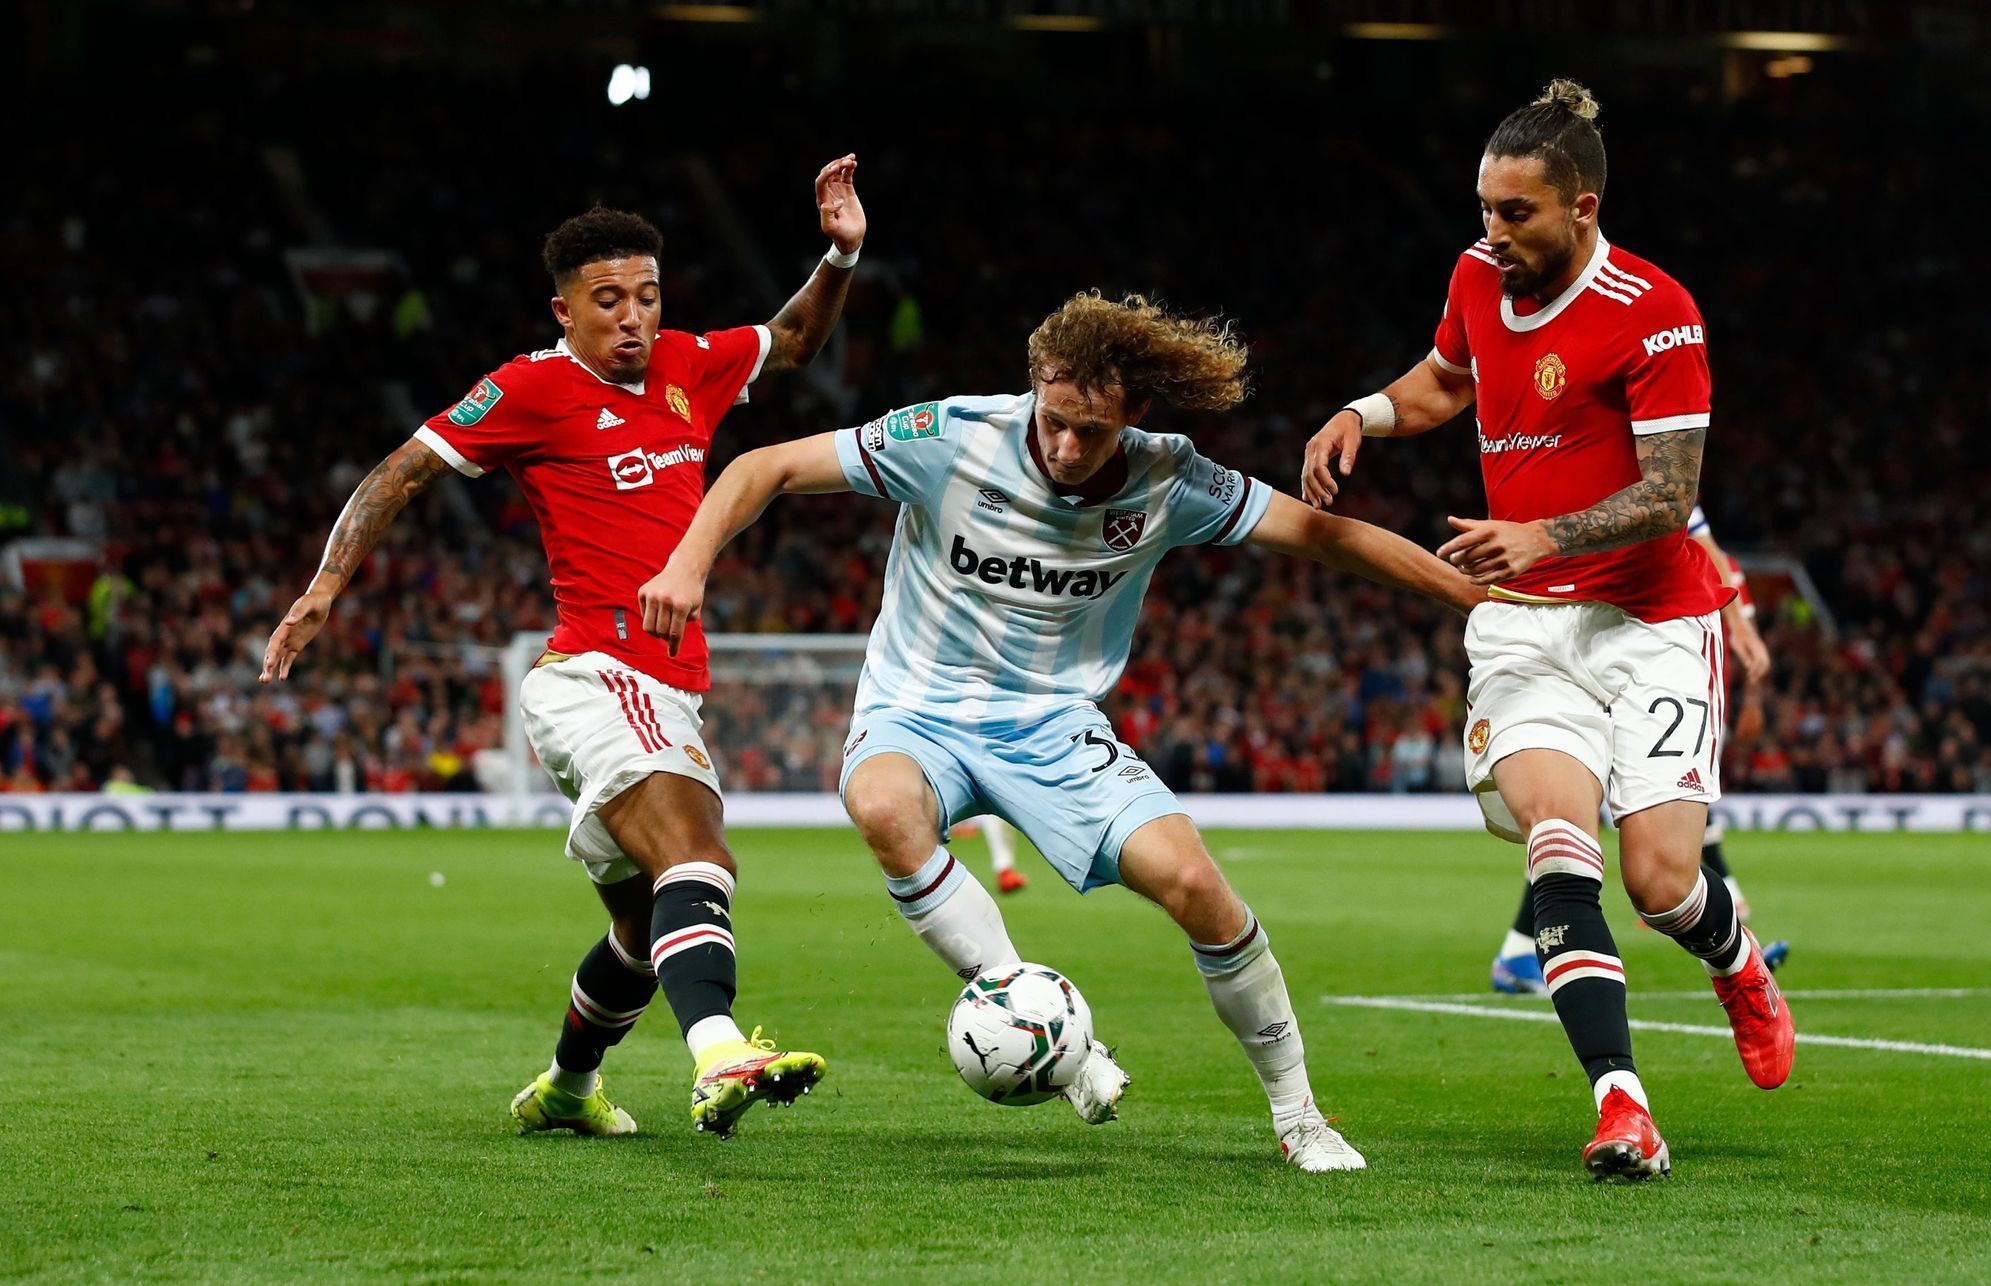 Anglický ligový pohár 2021/22, Manchester United - West Ham: Alex Král v souboji proti dvěma domácím hráčům